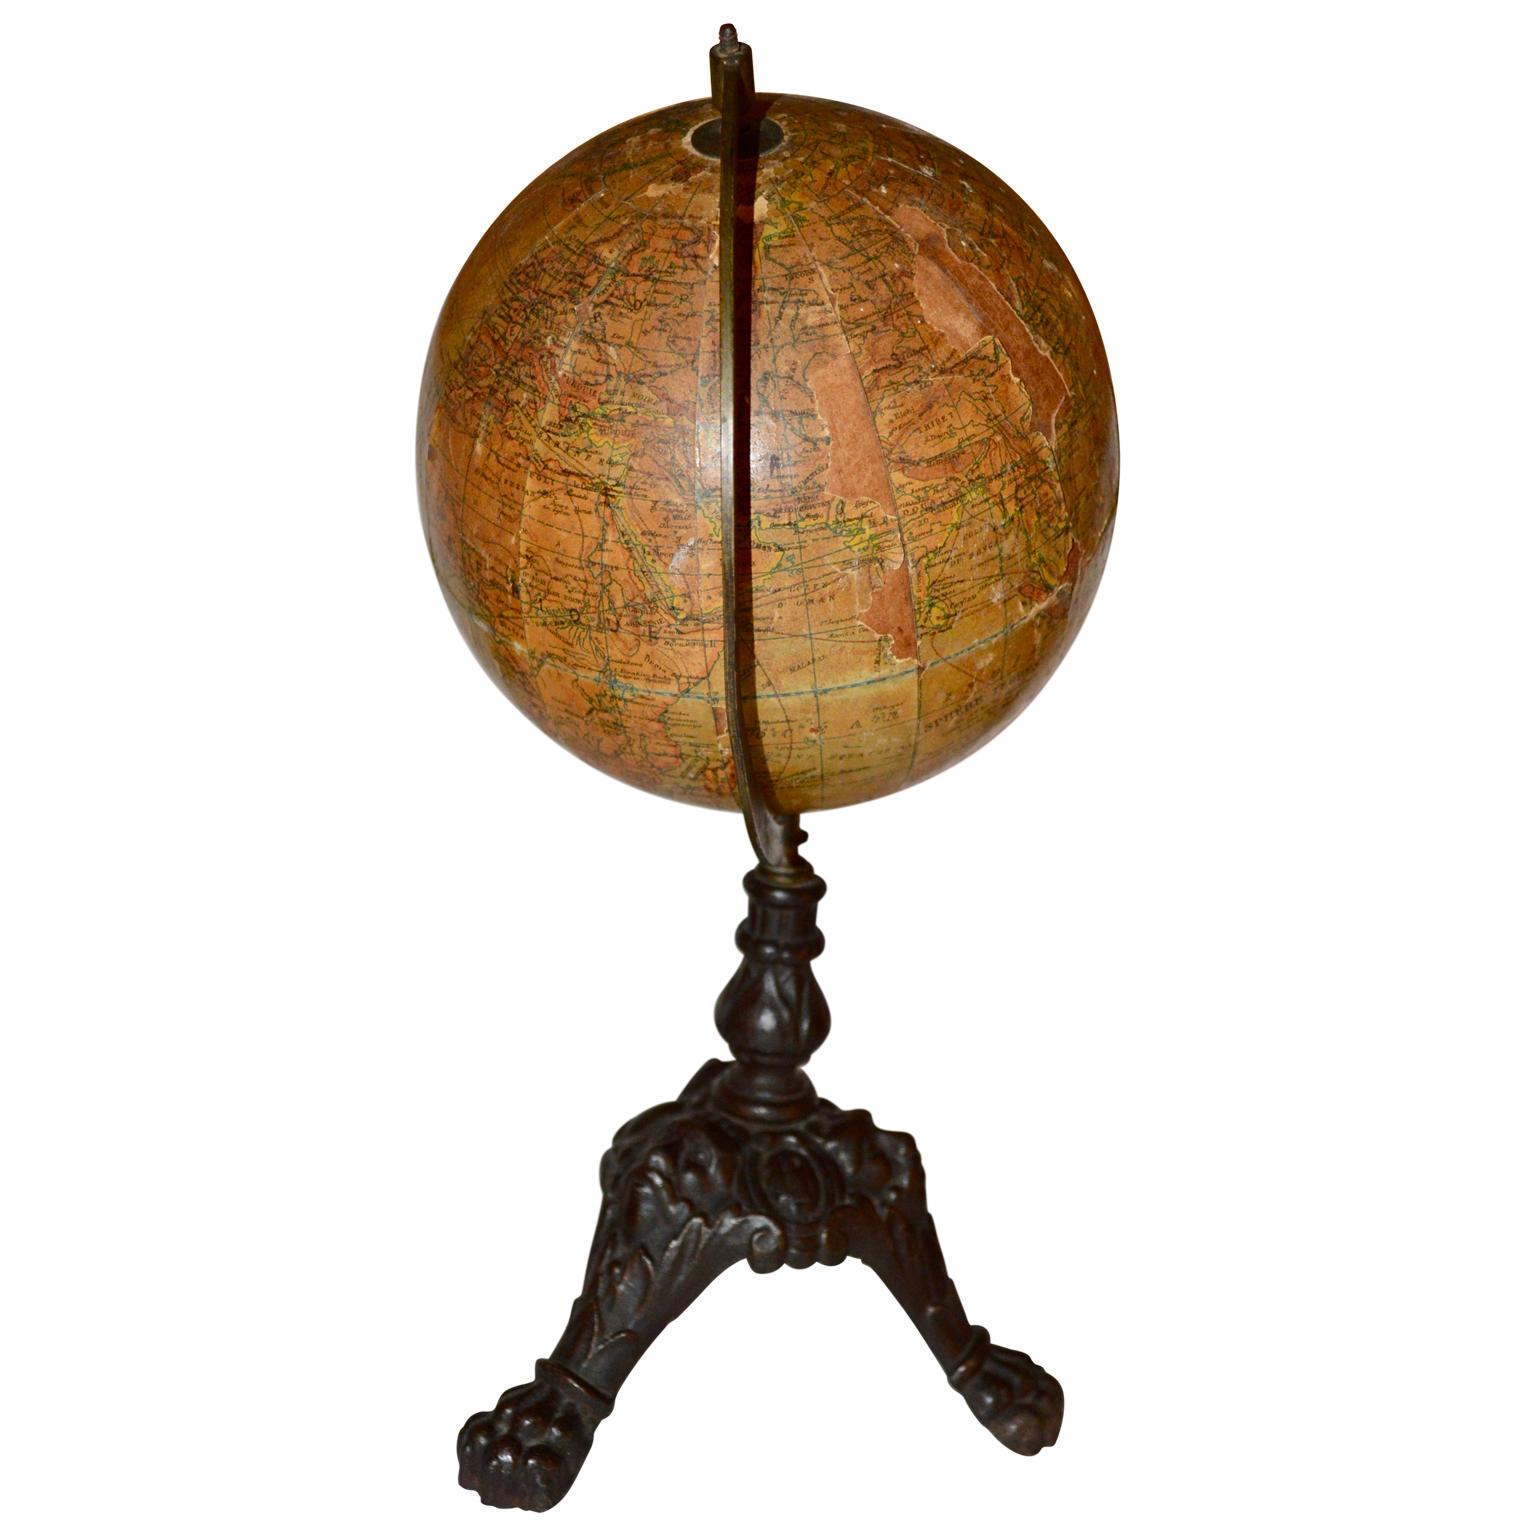 Cast French Papier-Mâché Terrestial Globe by J. Lebeque et Cie